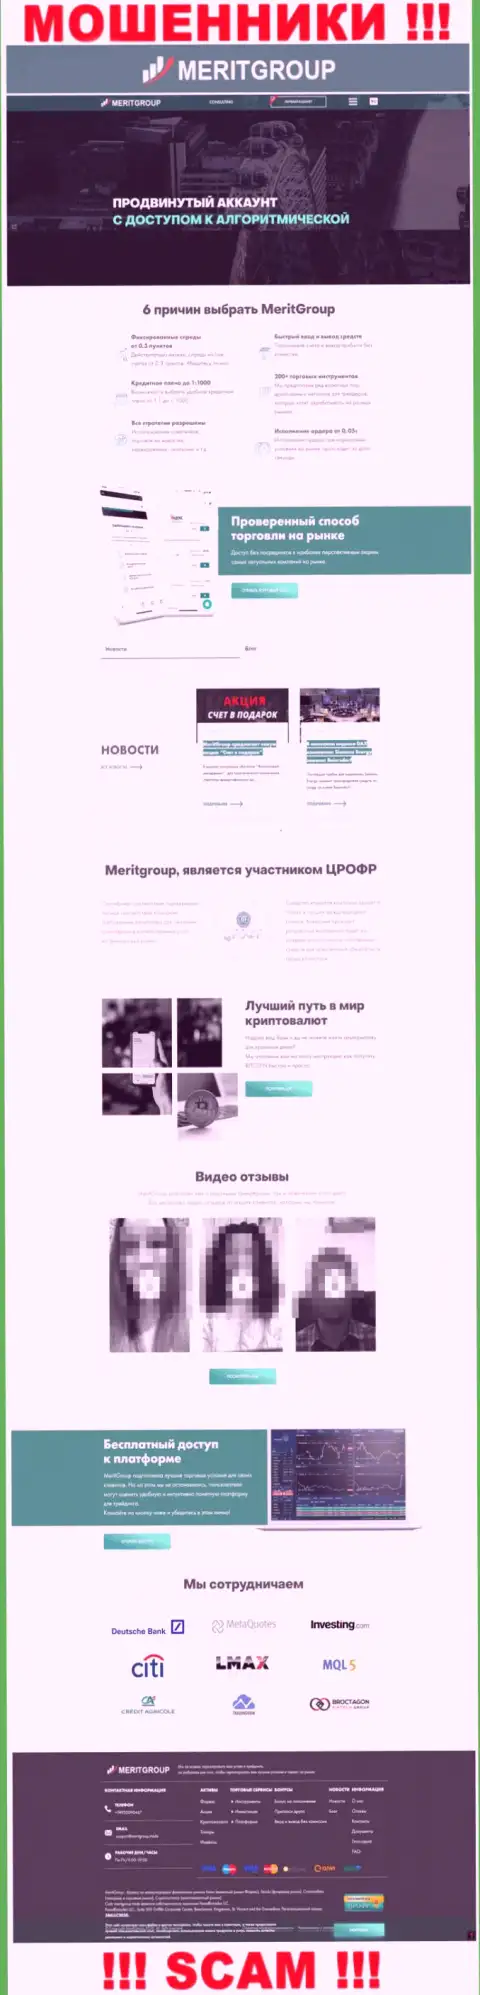 MeritGroup Trade - это официальный web-сервис интернет мошенников Мерит Групп